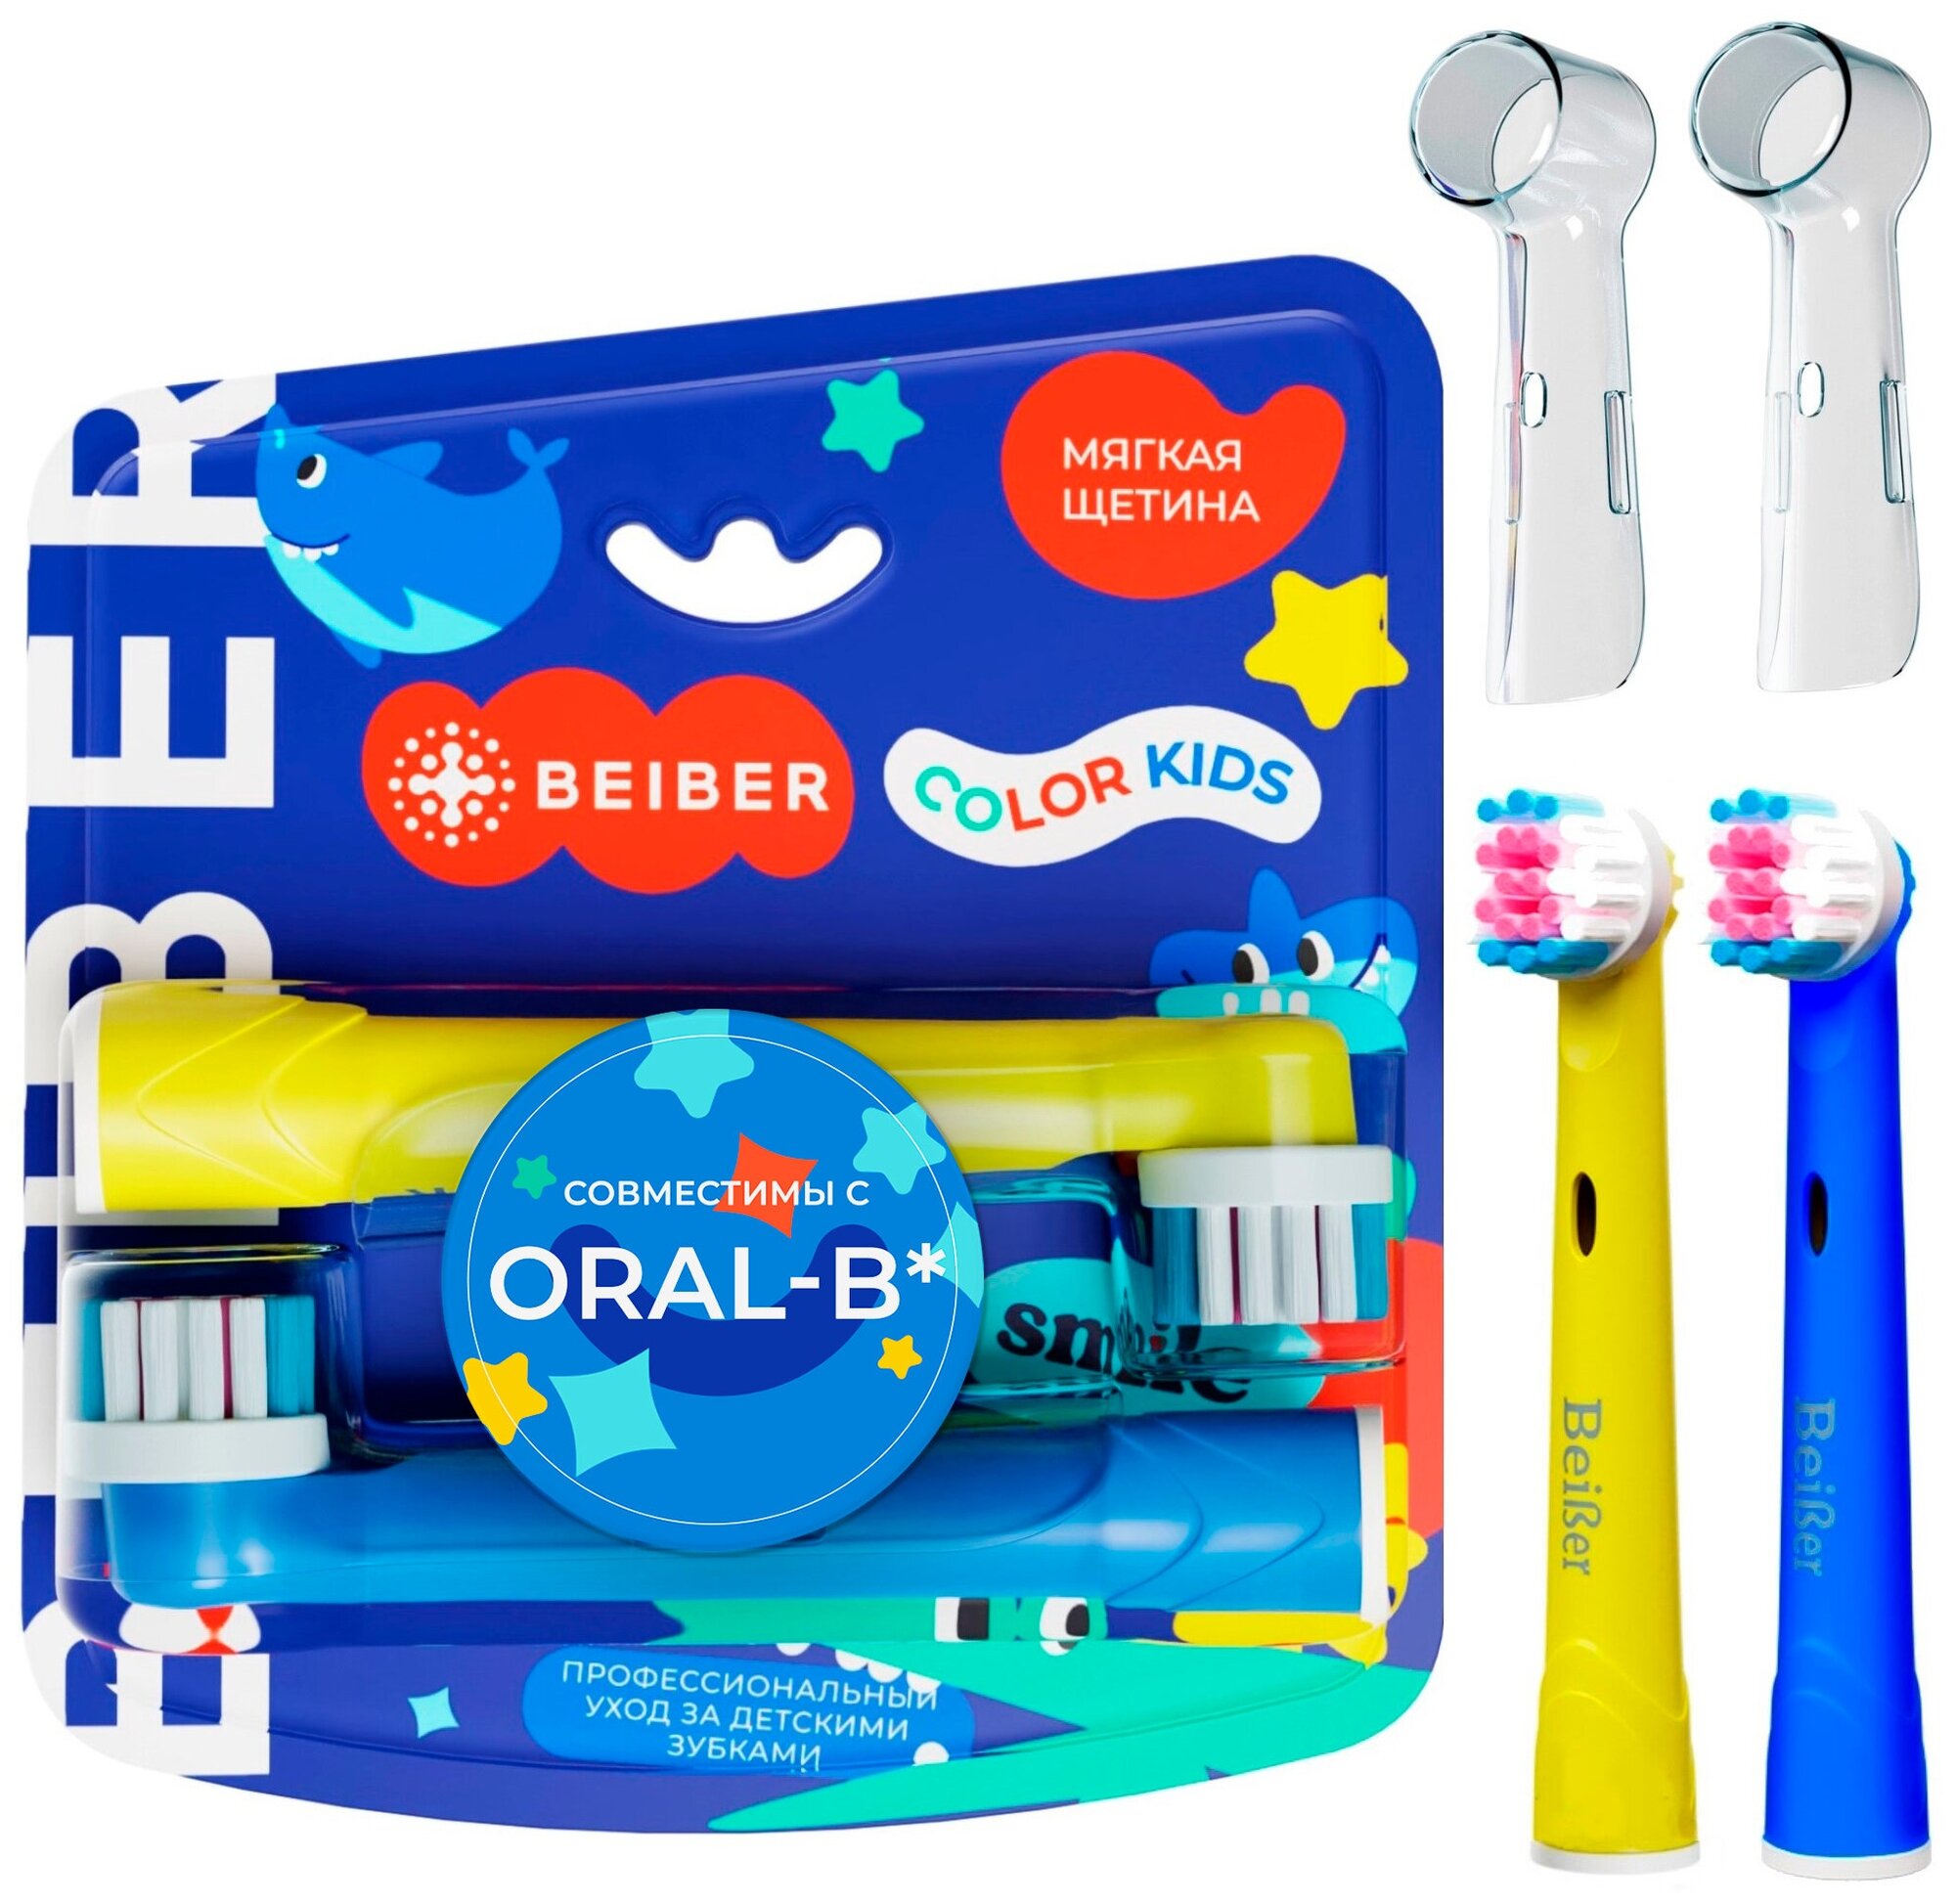 Насадки совместимые с Oral-B BEIBER KIDS для электрических зубных щеток, 2 шт.